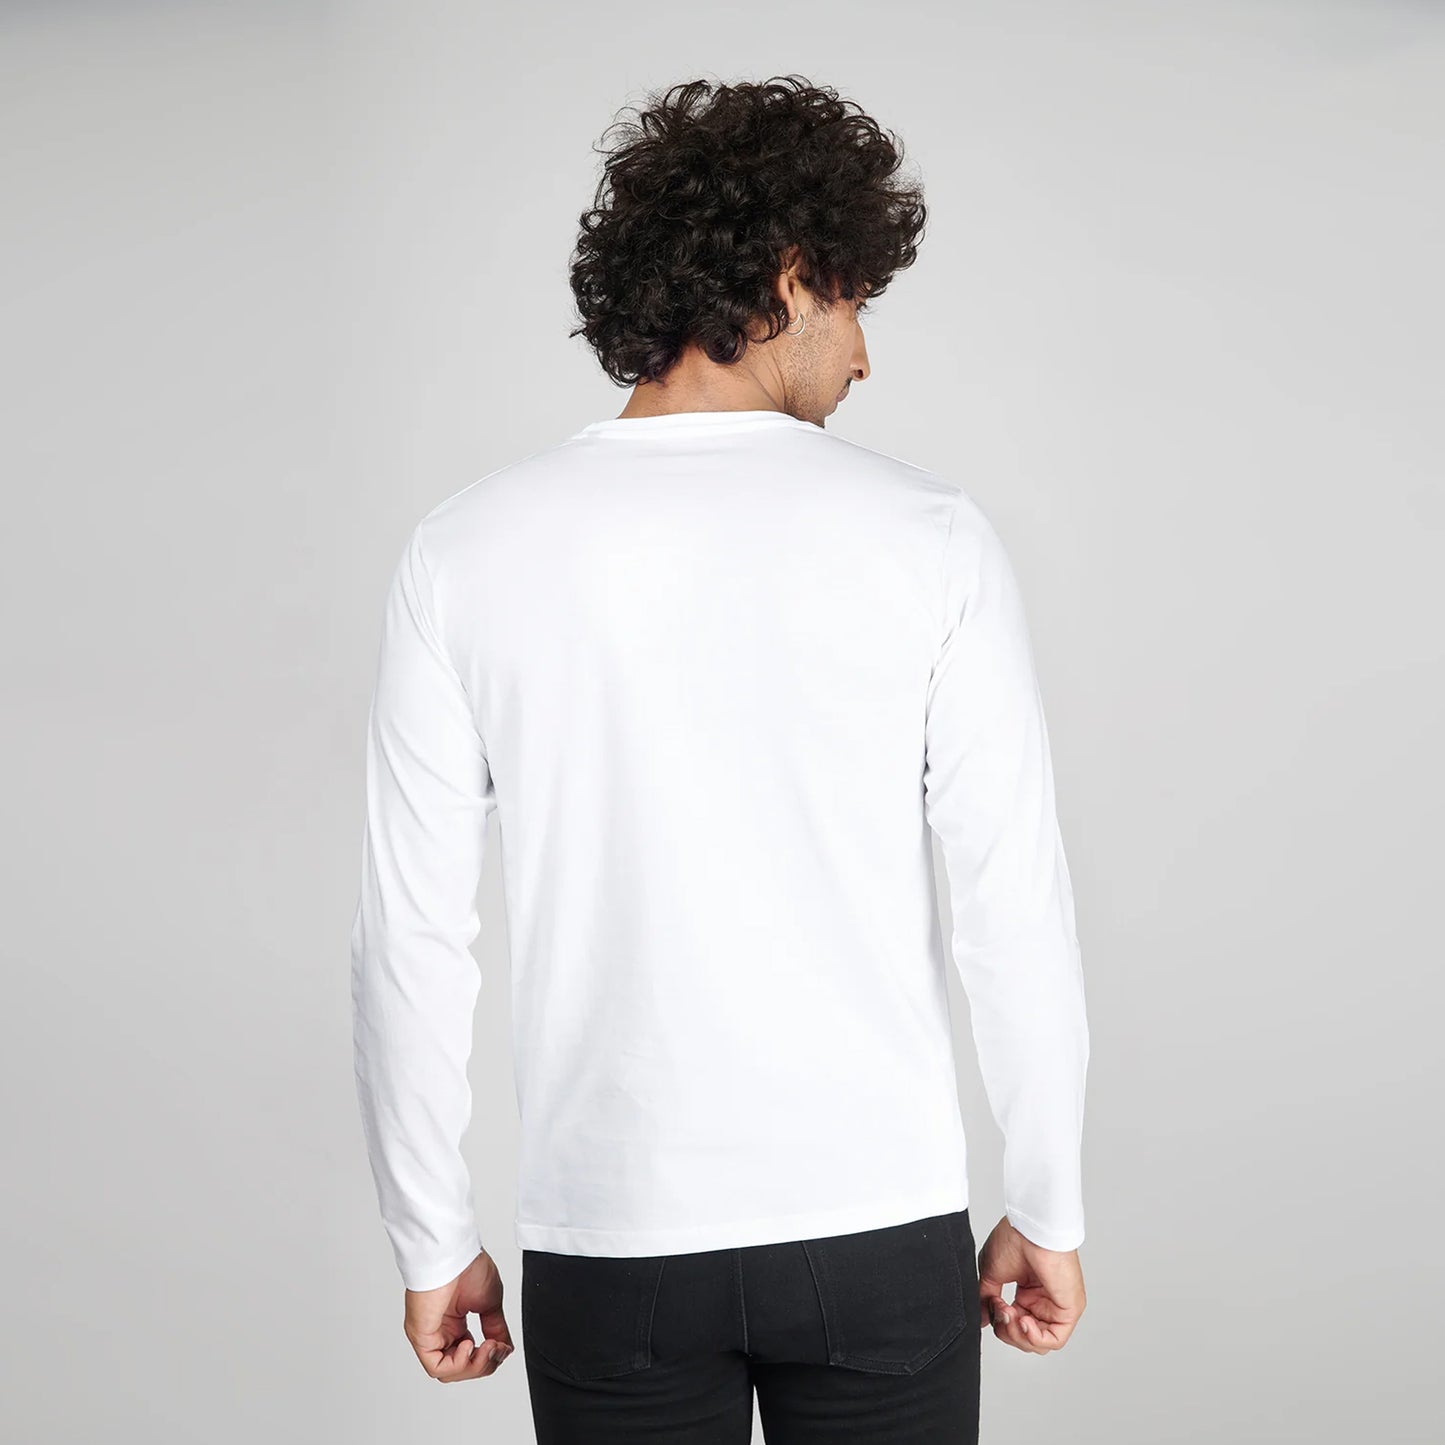 Basic White Full Sleeves T-Shirt